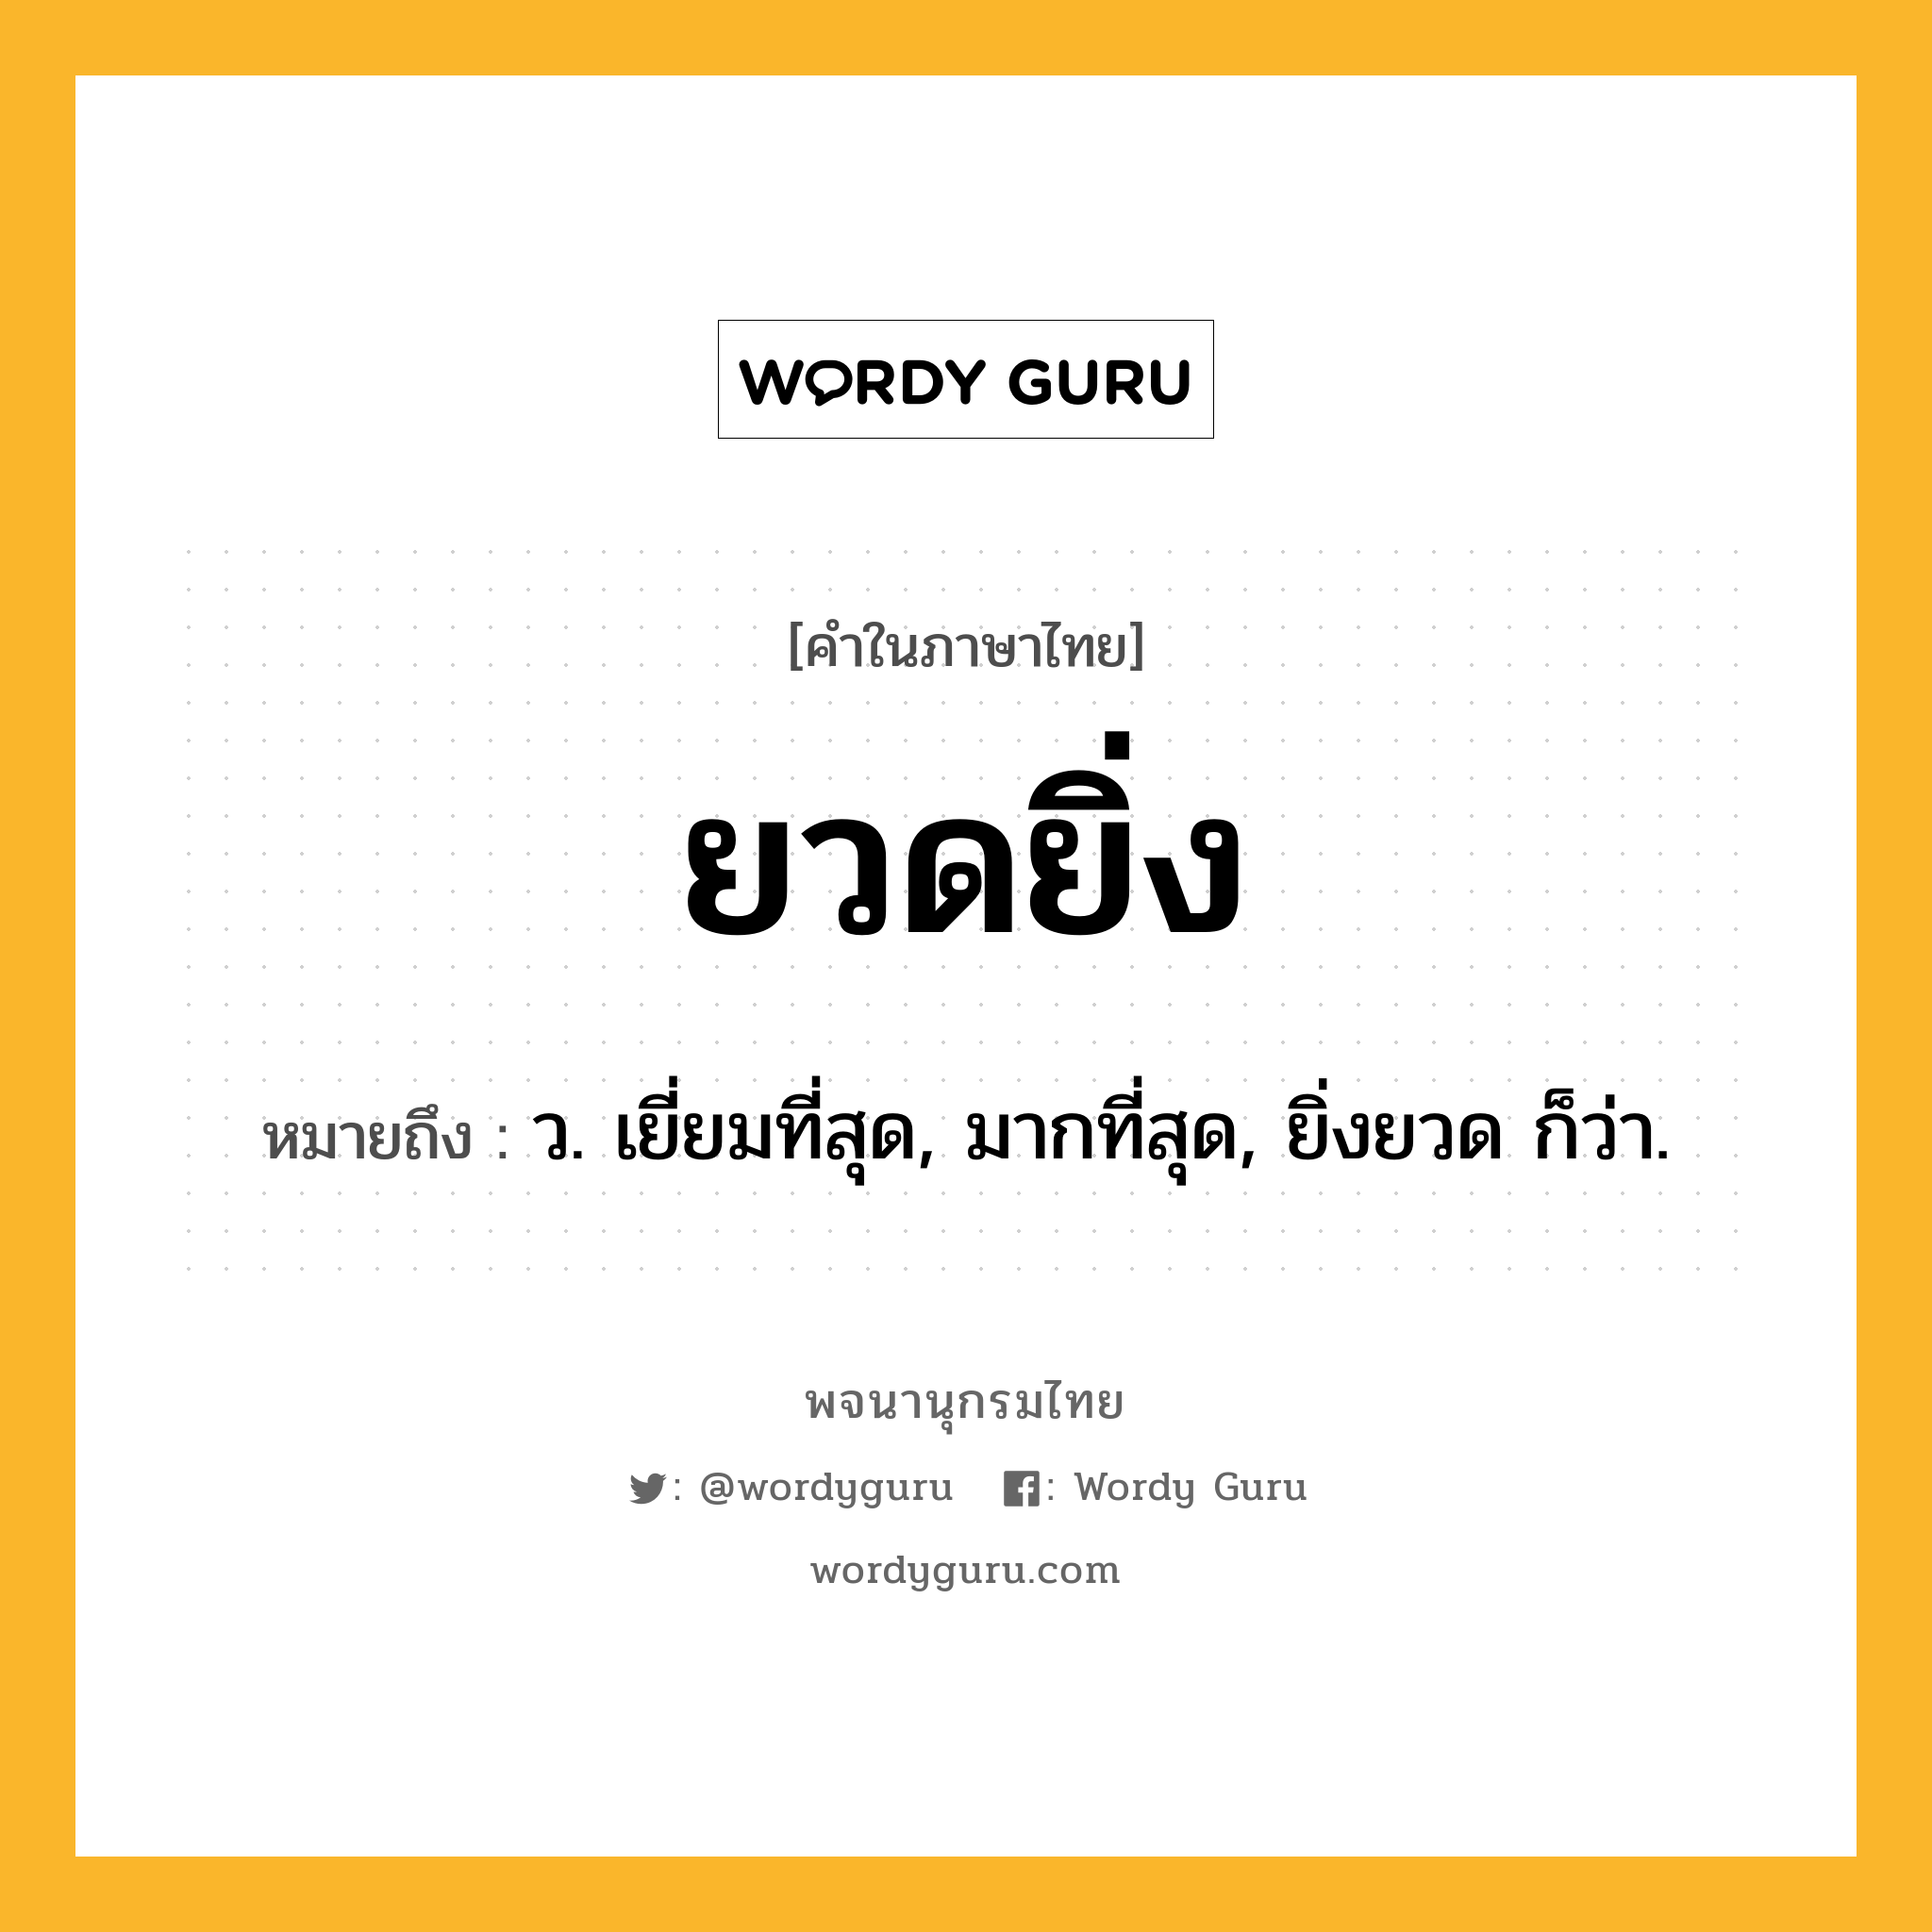 ยวดยิ่ง ความหมาย หมายถึงอะไร?, คำในภาษาไทย ยวดยิ่ง หมายถึง ว. เยี่ยมที่สุด, มากที่สุด, ยิ่งยวด ก็ว่า.